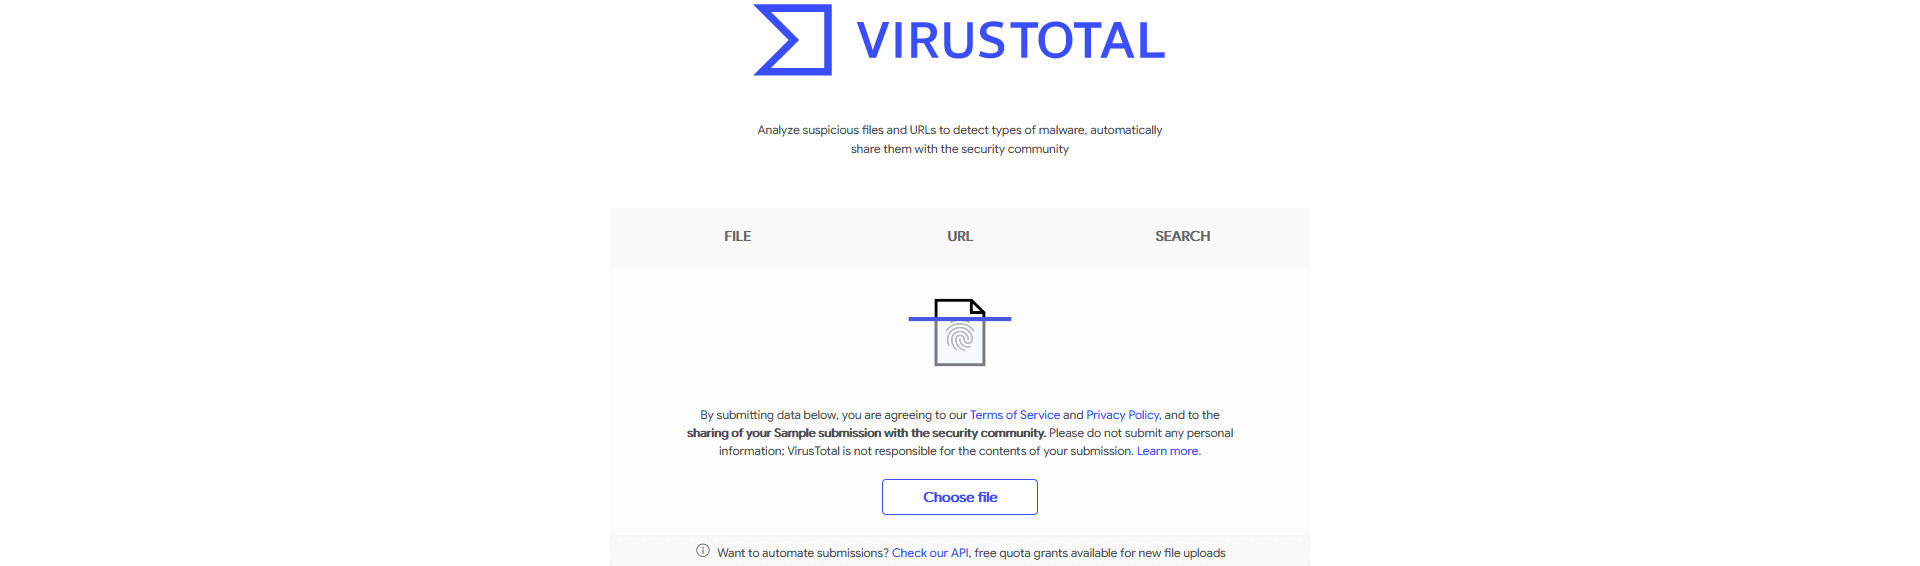 وایرس توتال VirusTotal اسکنر آنلاین امنیت وب سایت